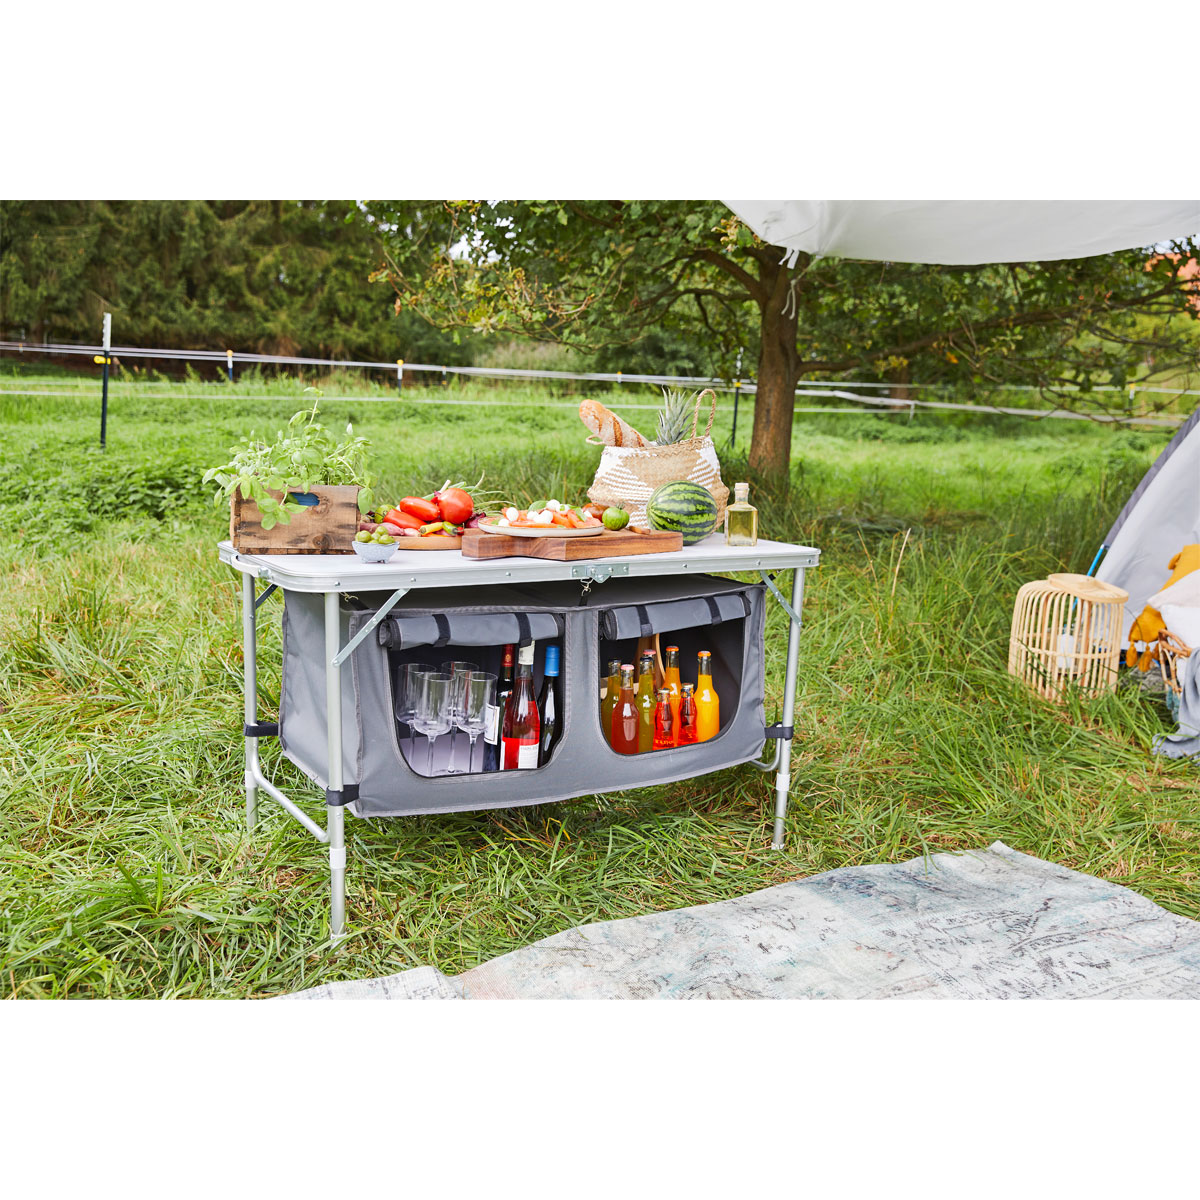 Der praktische Klapptisch / Beistelltisch für Picknick & Camping